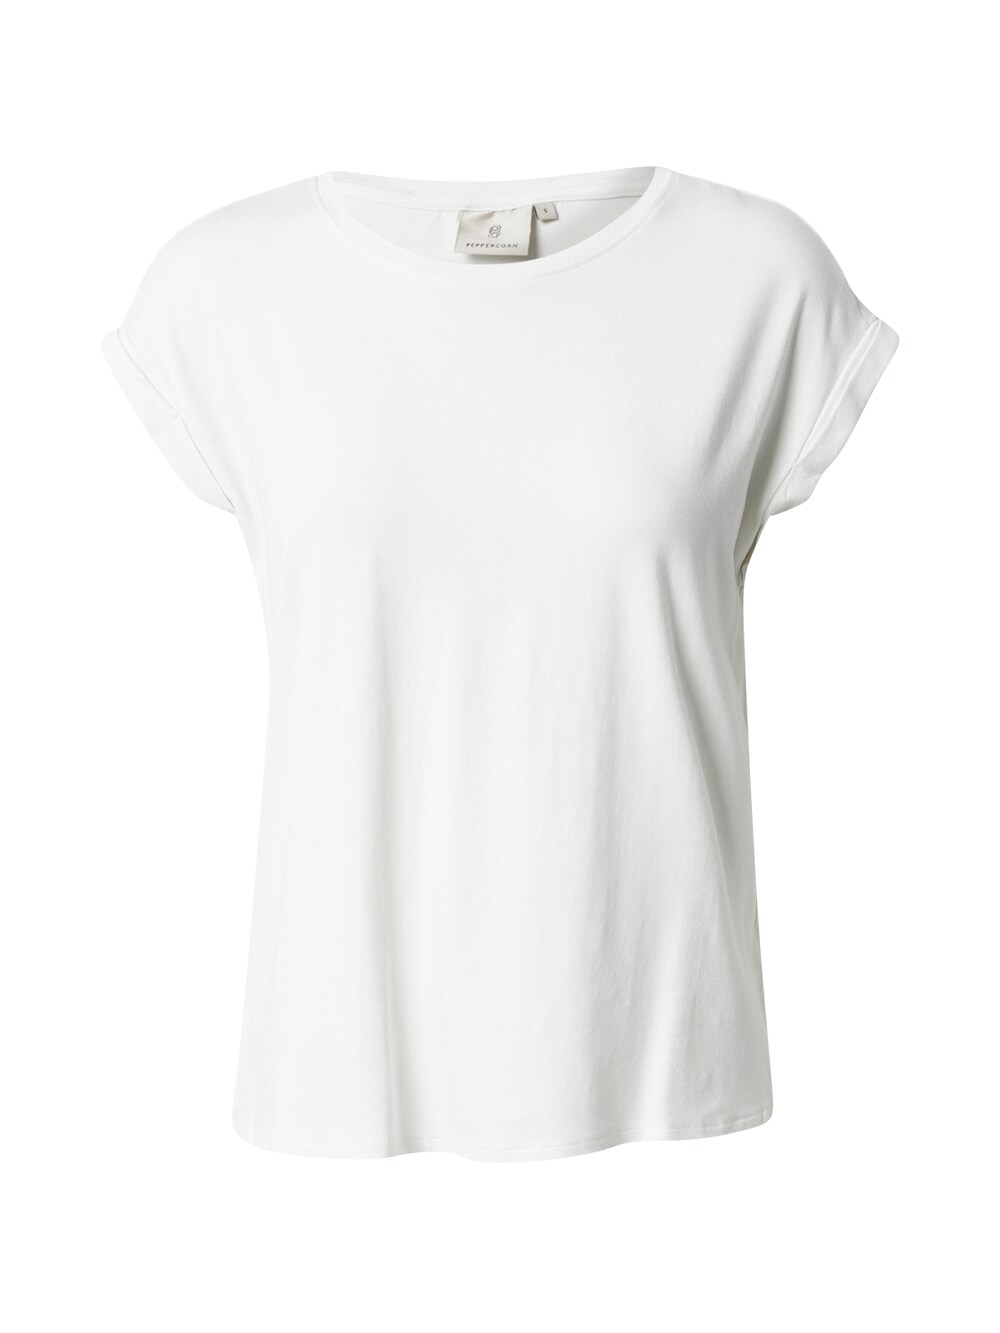 Рубашка Peppercorn Rosalinda Malucca, белый рубашка peppercorn